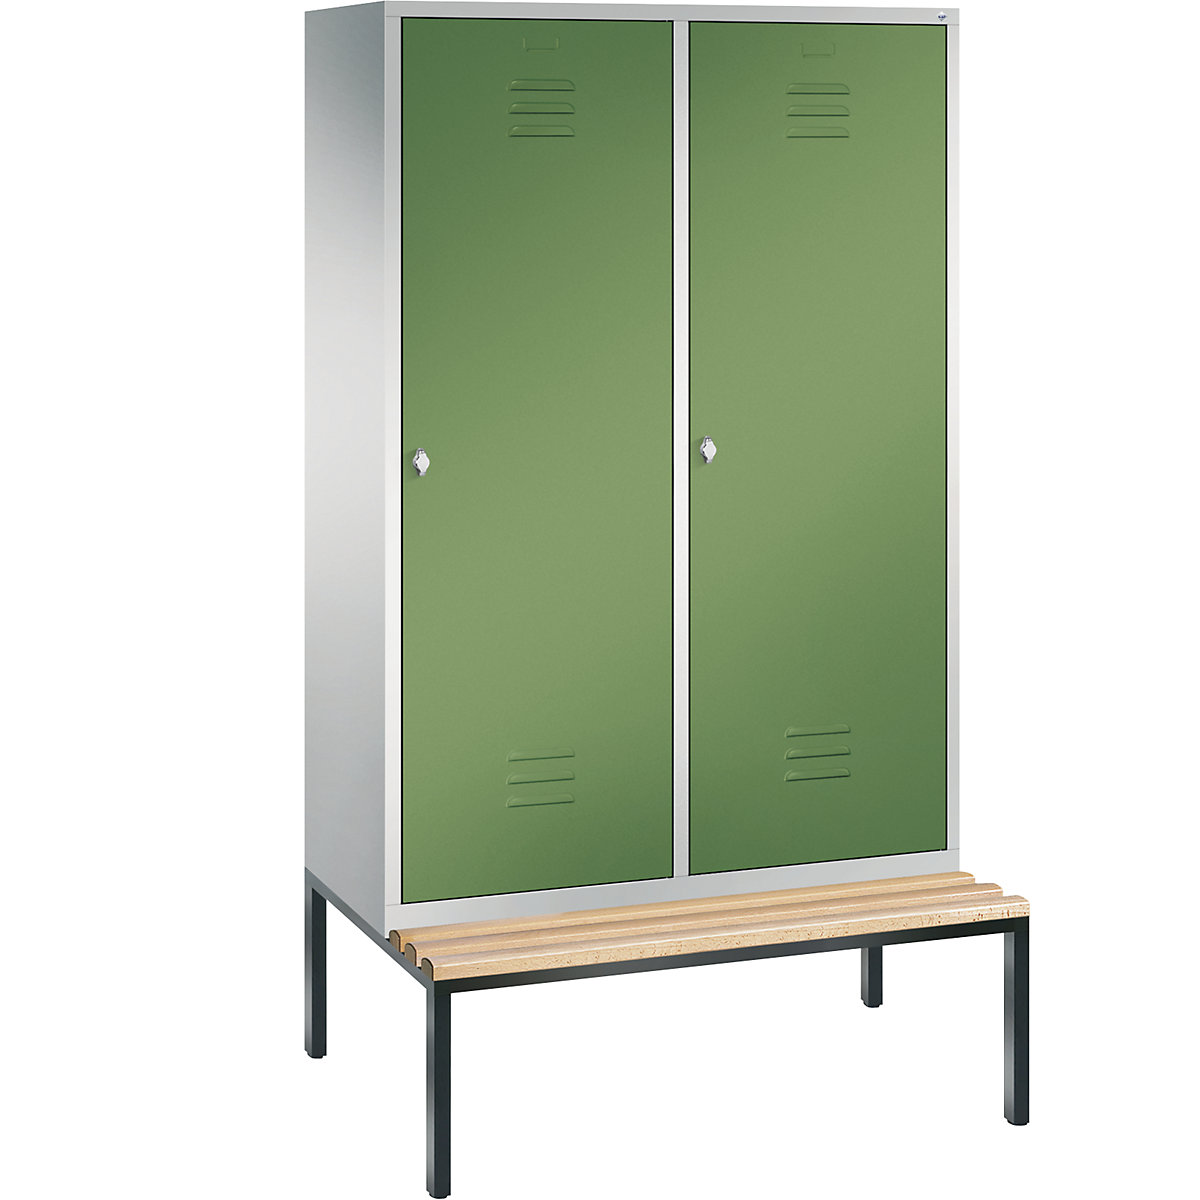 Šatní skříň s podstavnou lavicí CLASSIC s dveřmi přes 2 oddíly – C+P, 4 oddíly, šířka oddílu 300 mm, světlá šedá / rezedová zelená-6